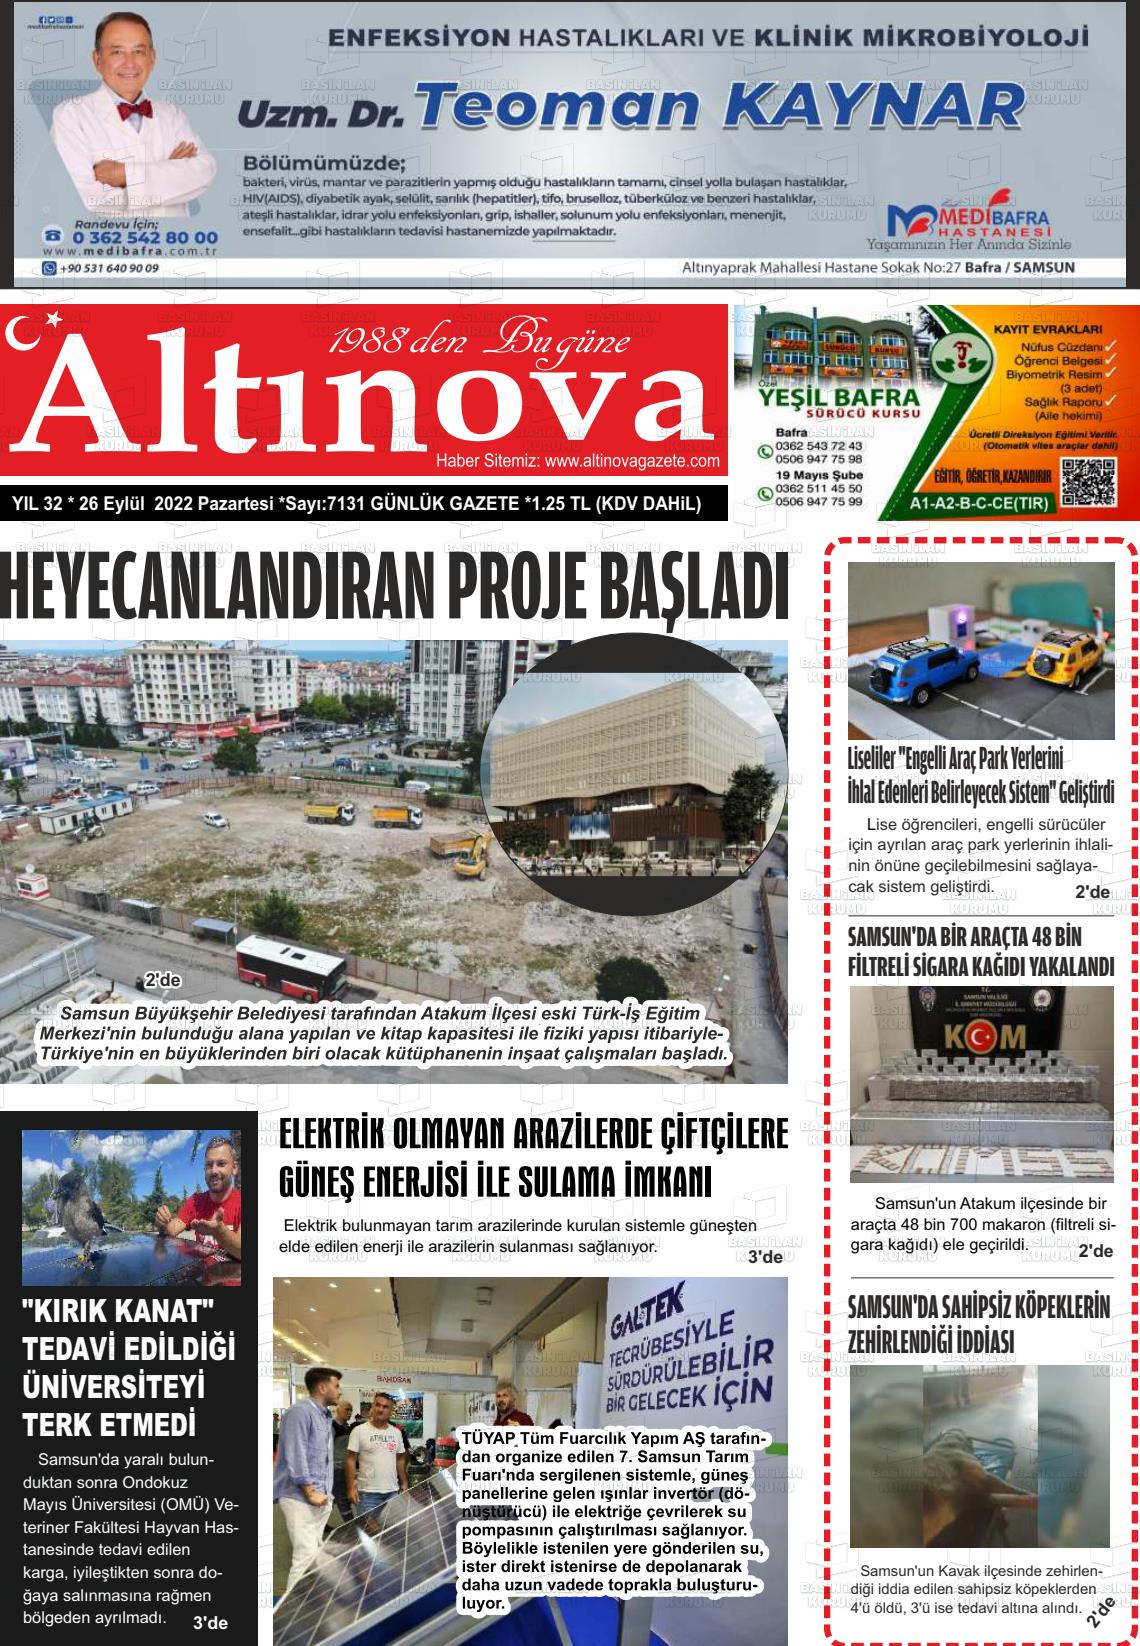 26 Eylül 2022 Altınova Gazete Manşeti